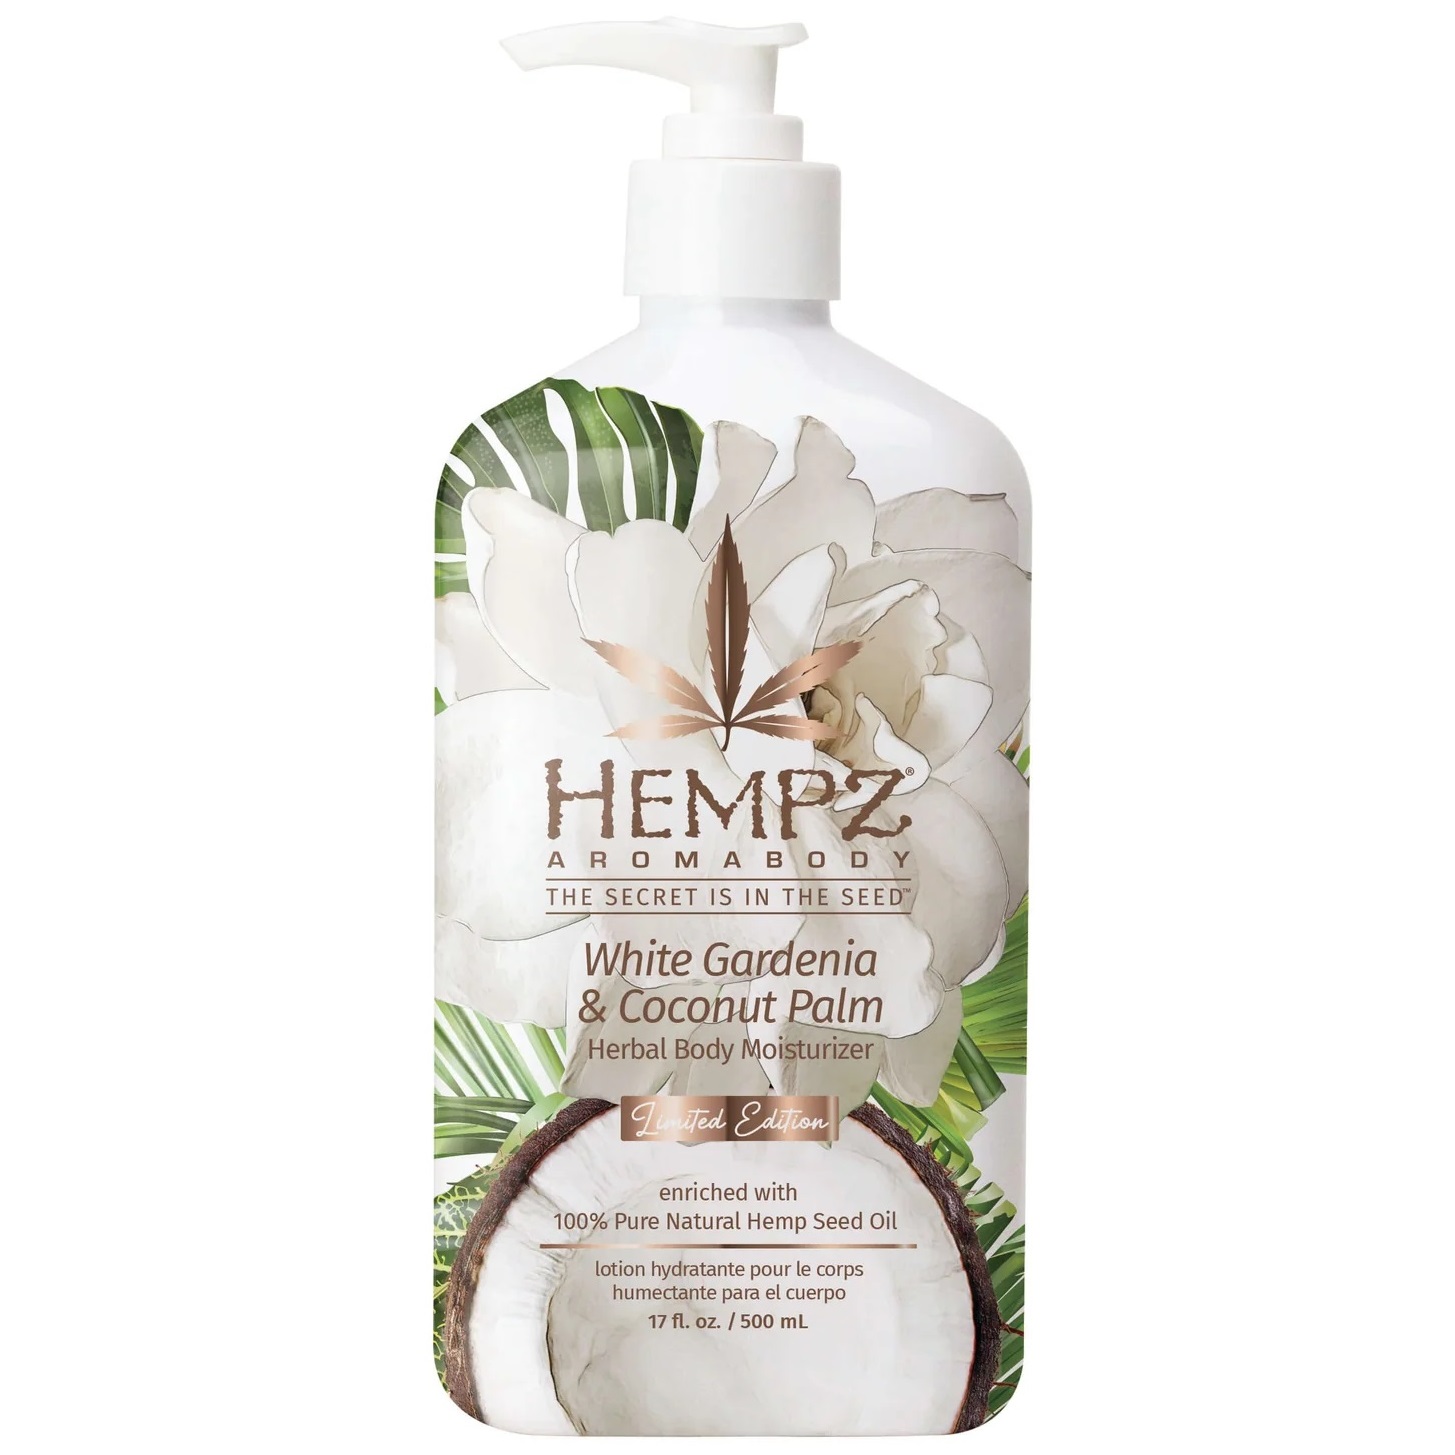 Hempz Увлажняющее молочко для тела White Gardenia & Coconut Palm, 500 мл (Hempz, Белая гардения и кокос) александра белинда белая гардения